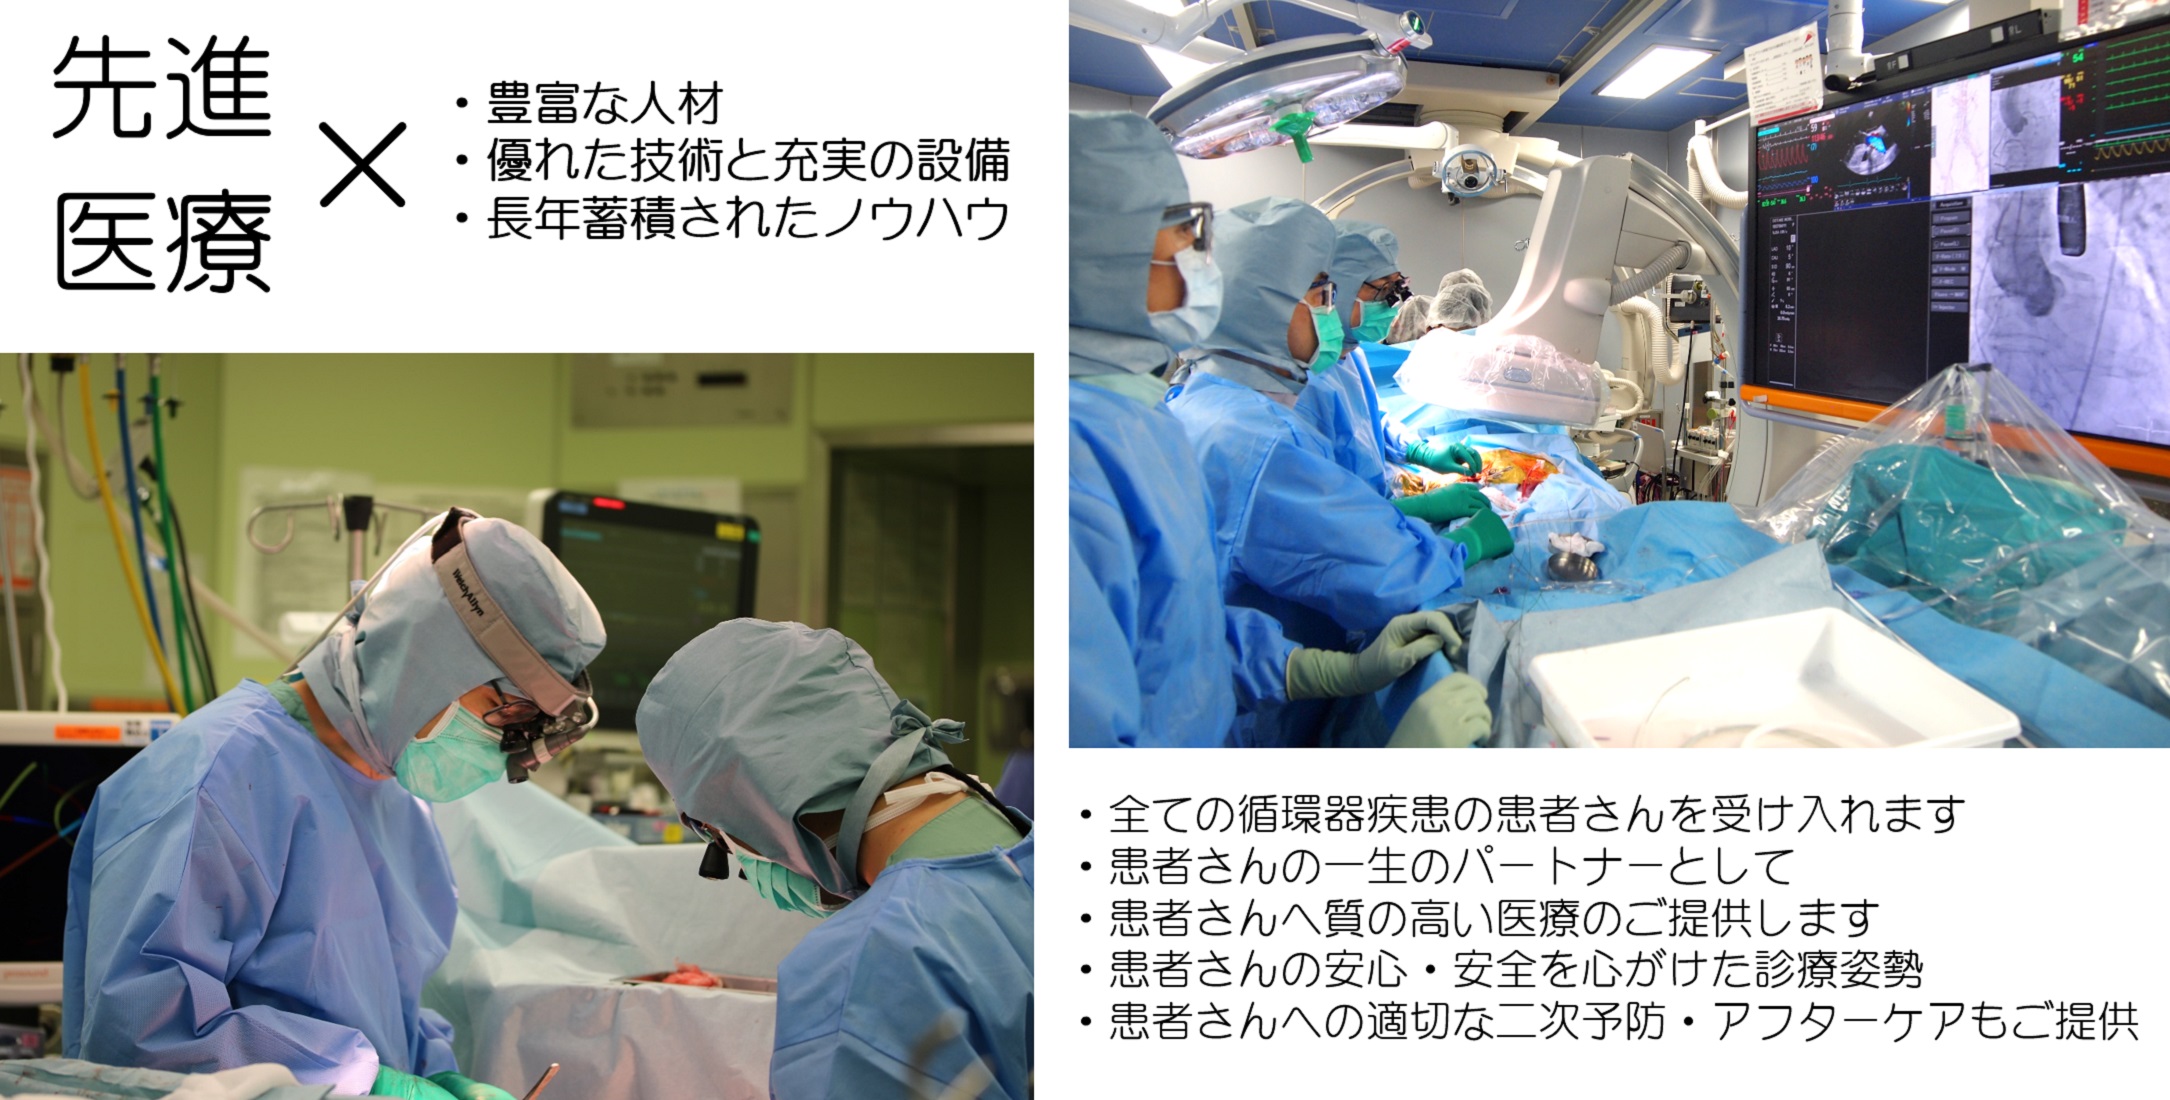 横浜市立大学附属市民総合医療センター心臓血管センター トップ